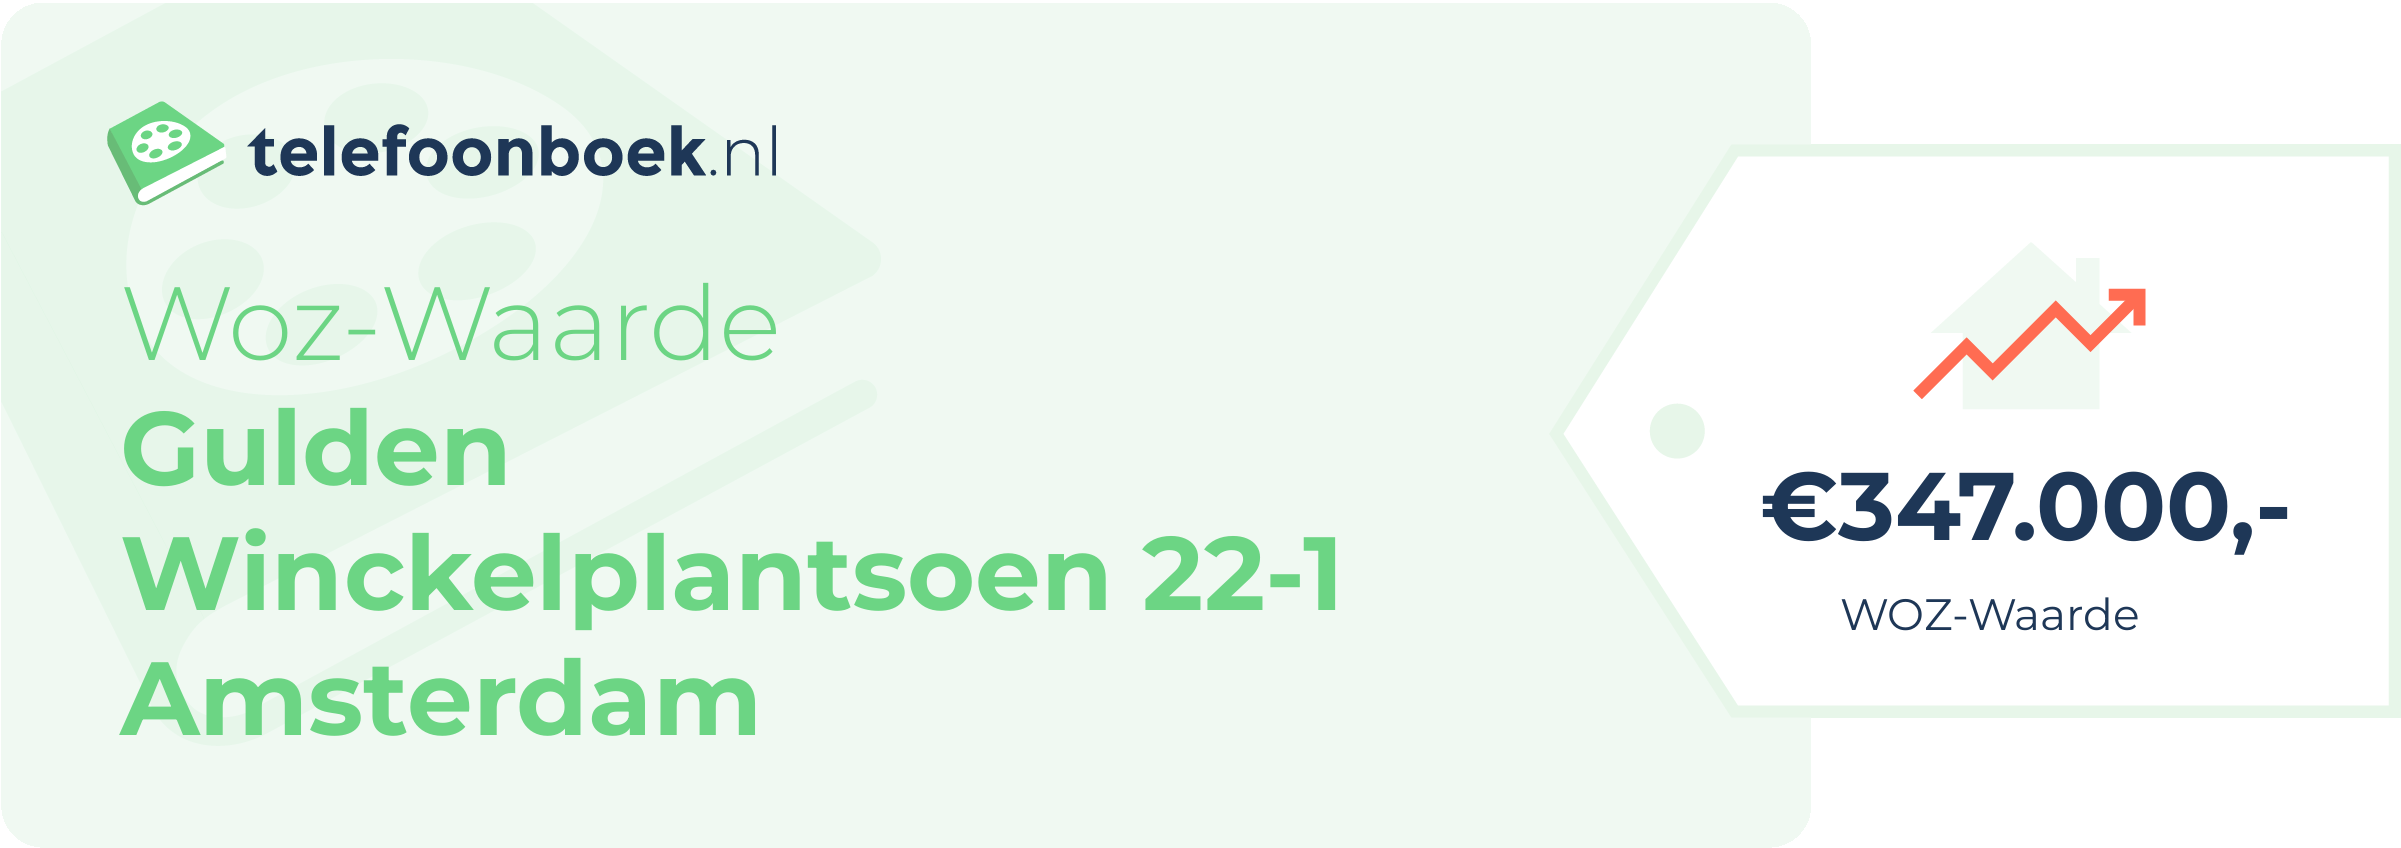 WOZ-waarde Gulden Winckelplantsoen 22-1 Amsterdam